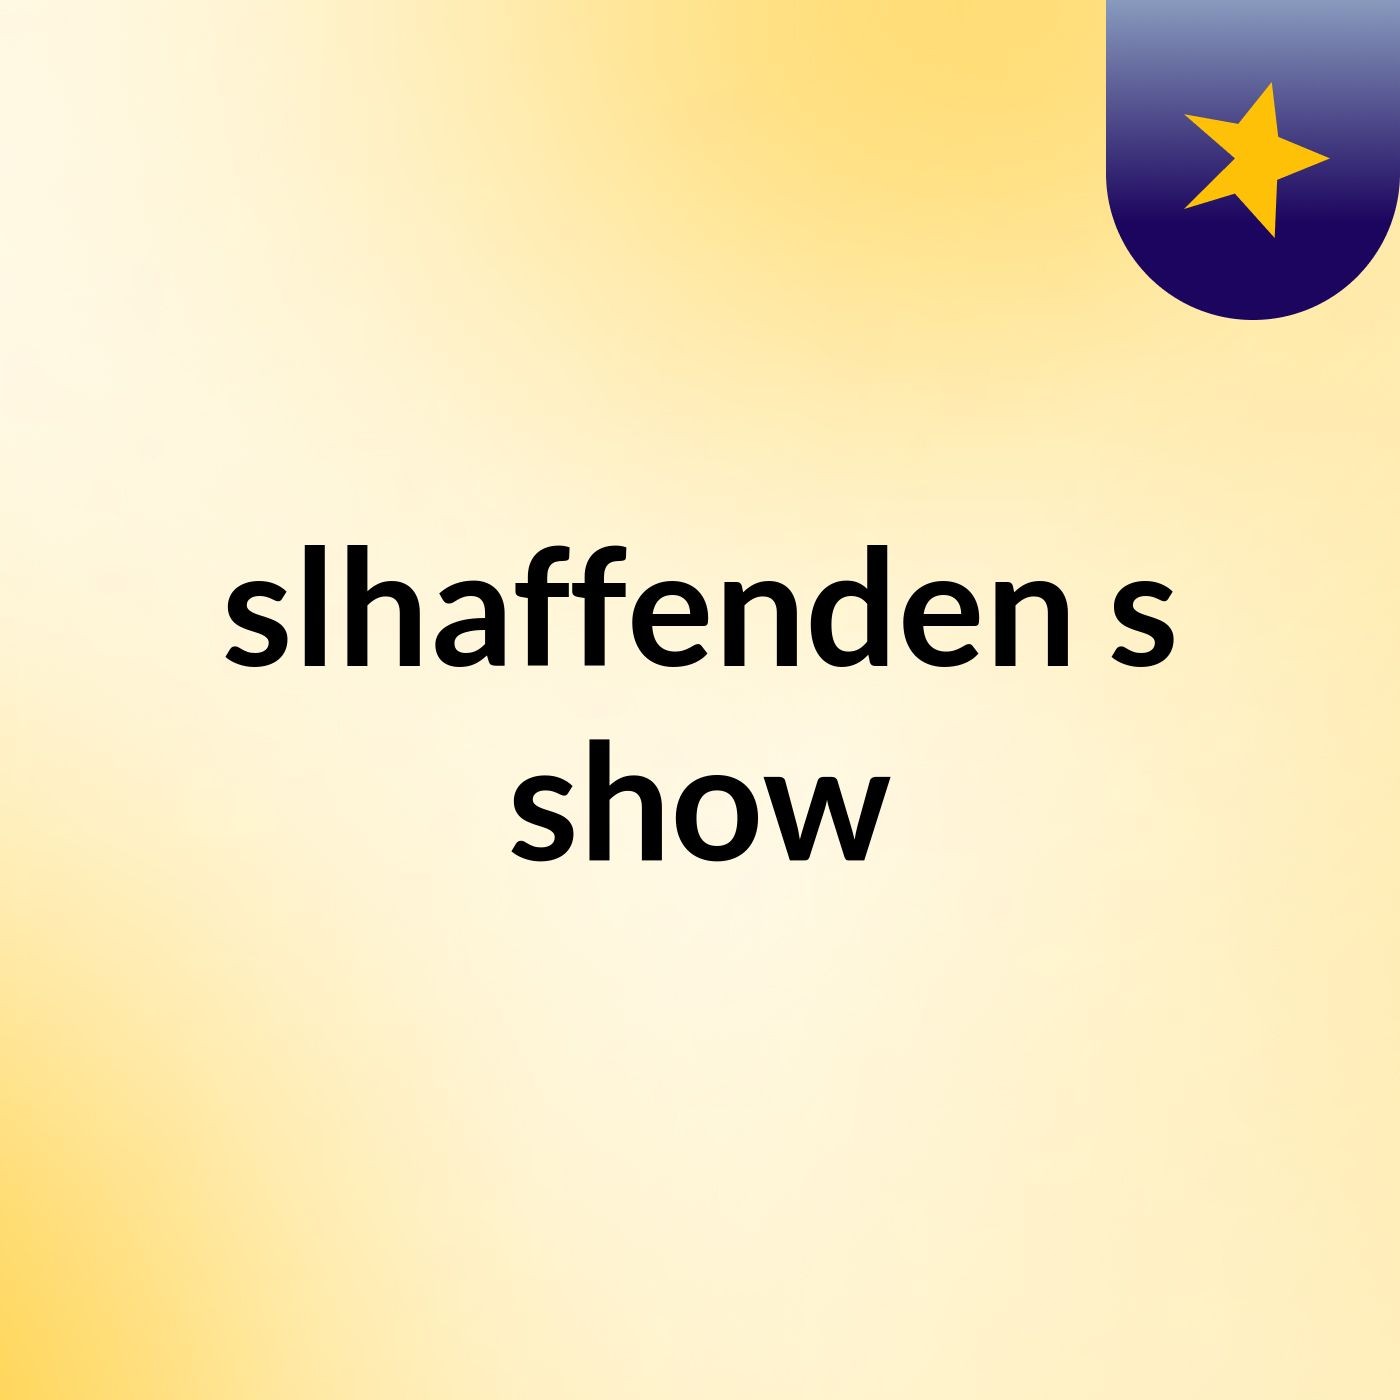 slhaffenden's show